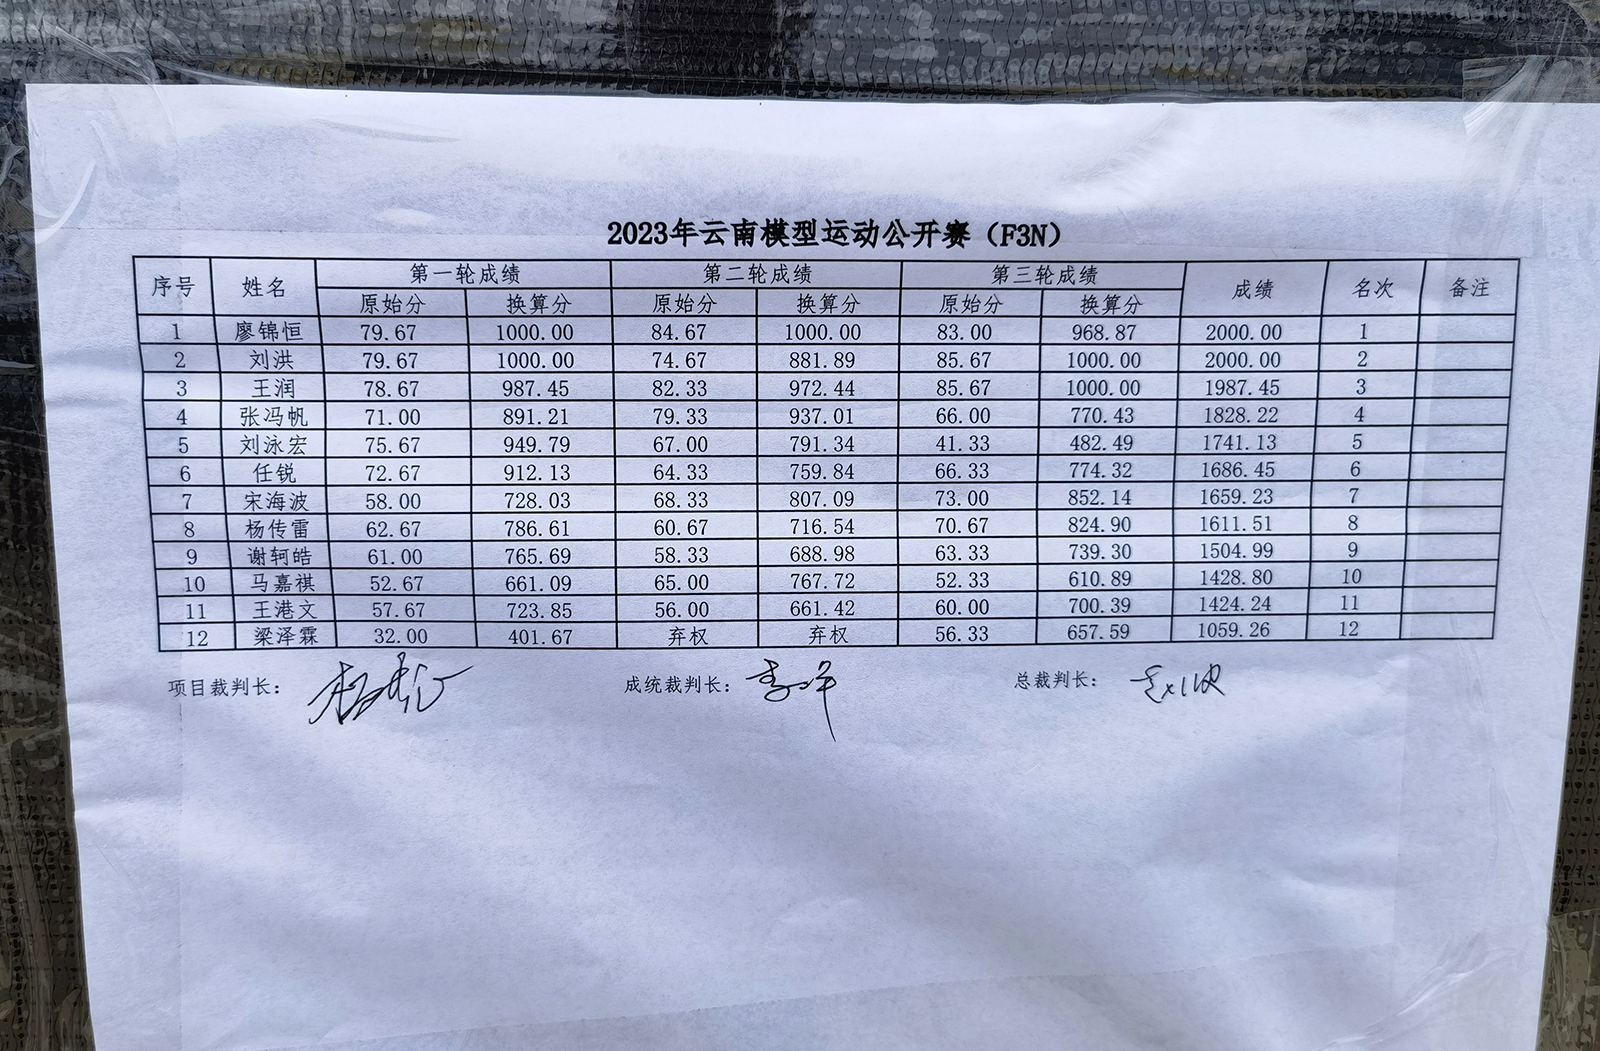 2023年云南模型公开赛TeamRVE获得3C和3N两个项目的冠军(图38)